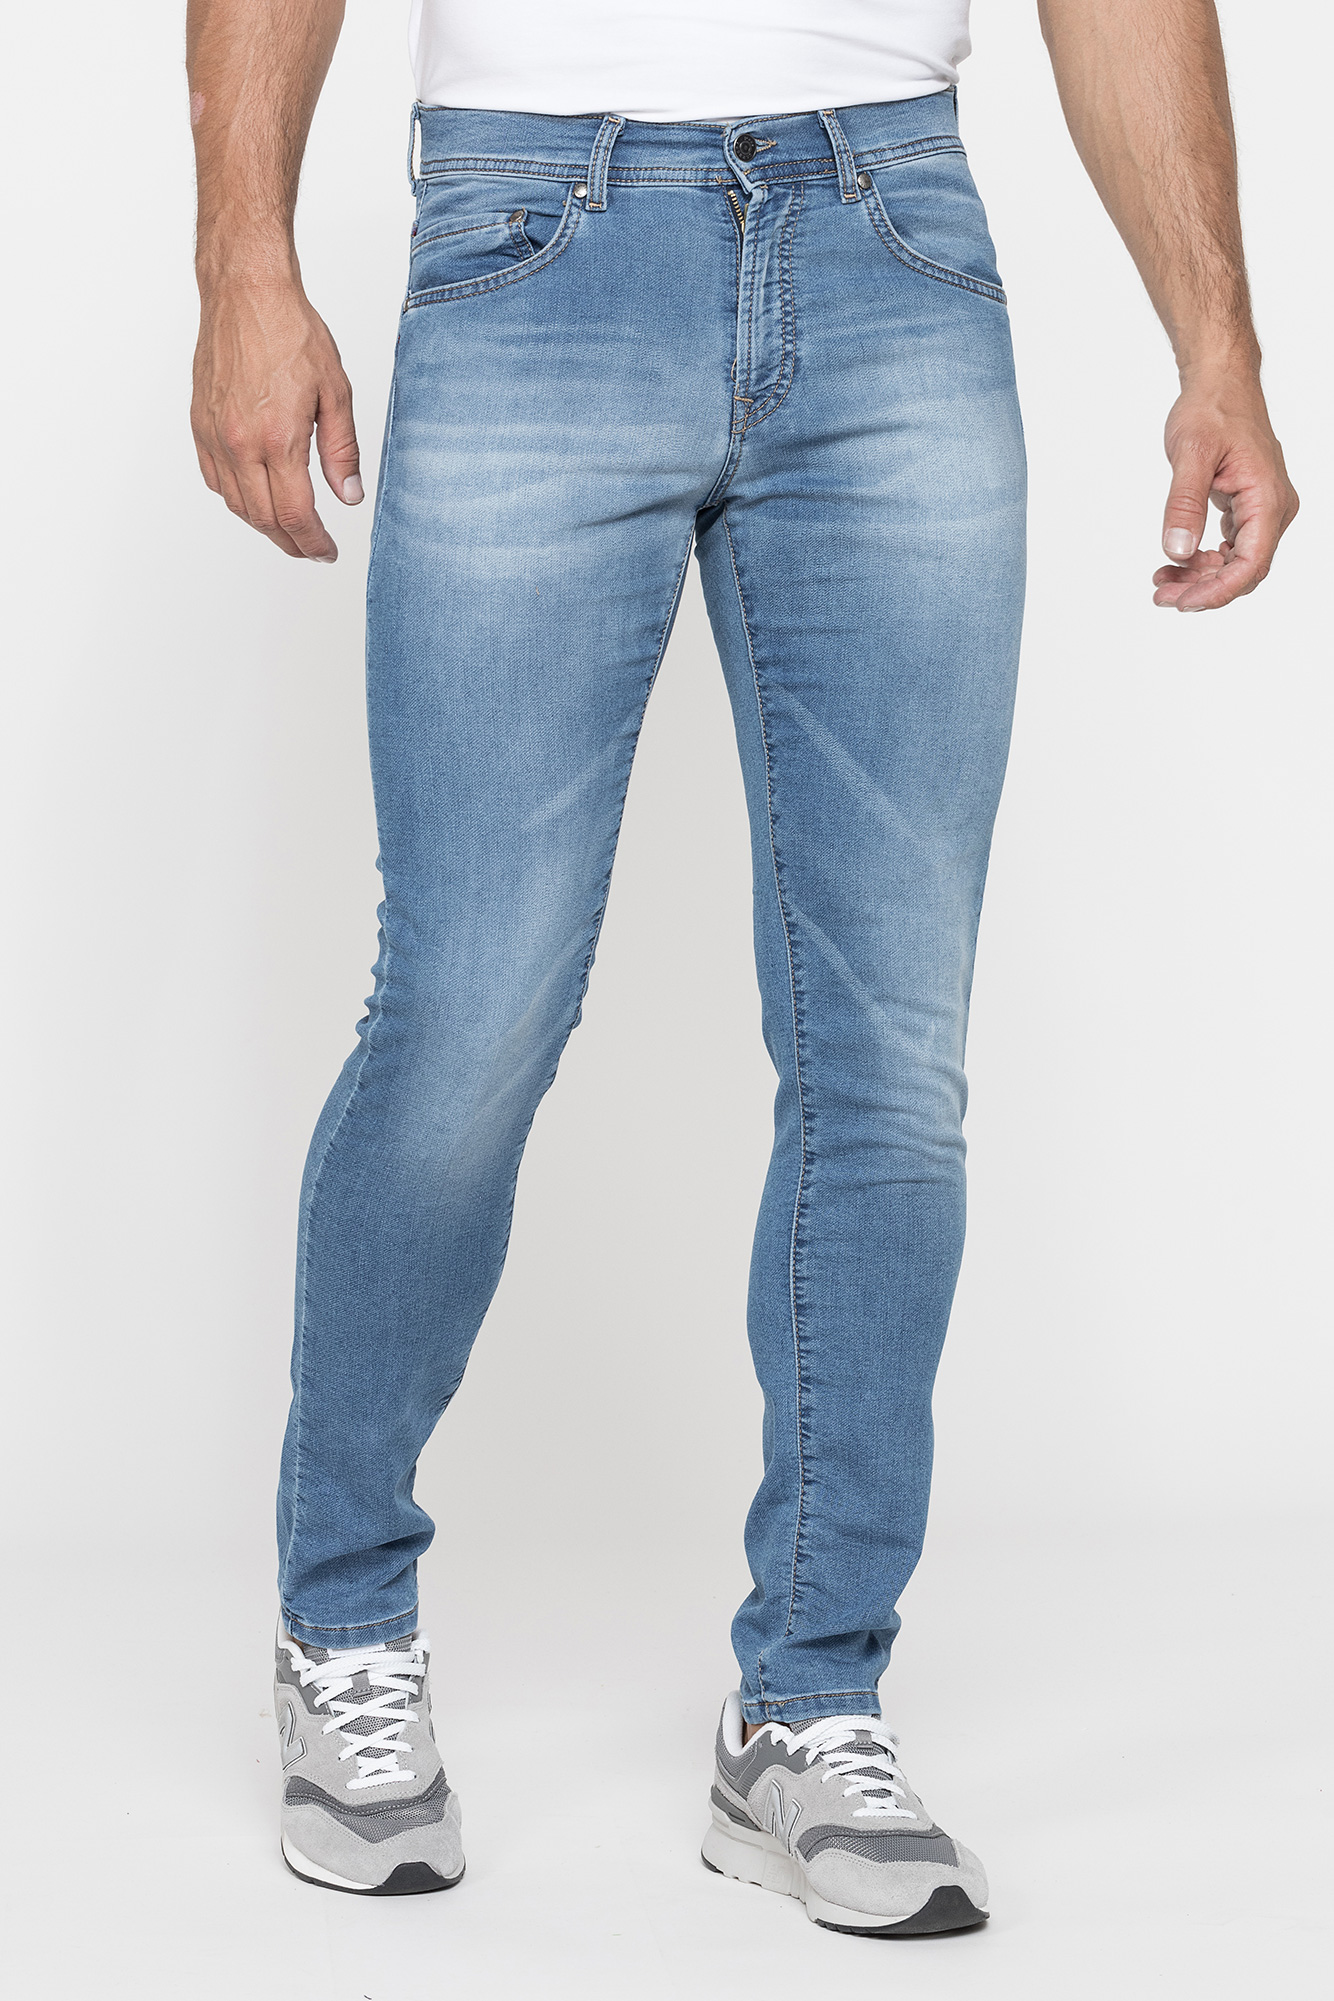 pariteit buitenste ironie Zachte Carrera Jeans Heren Slim Fit, Lichter-512 (Model 717) - Outfit-s.nl